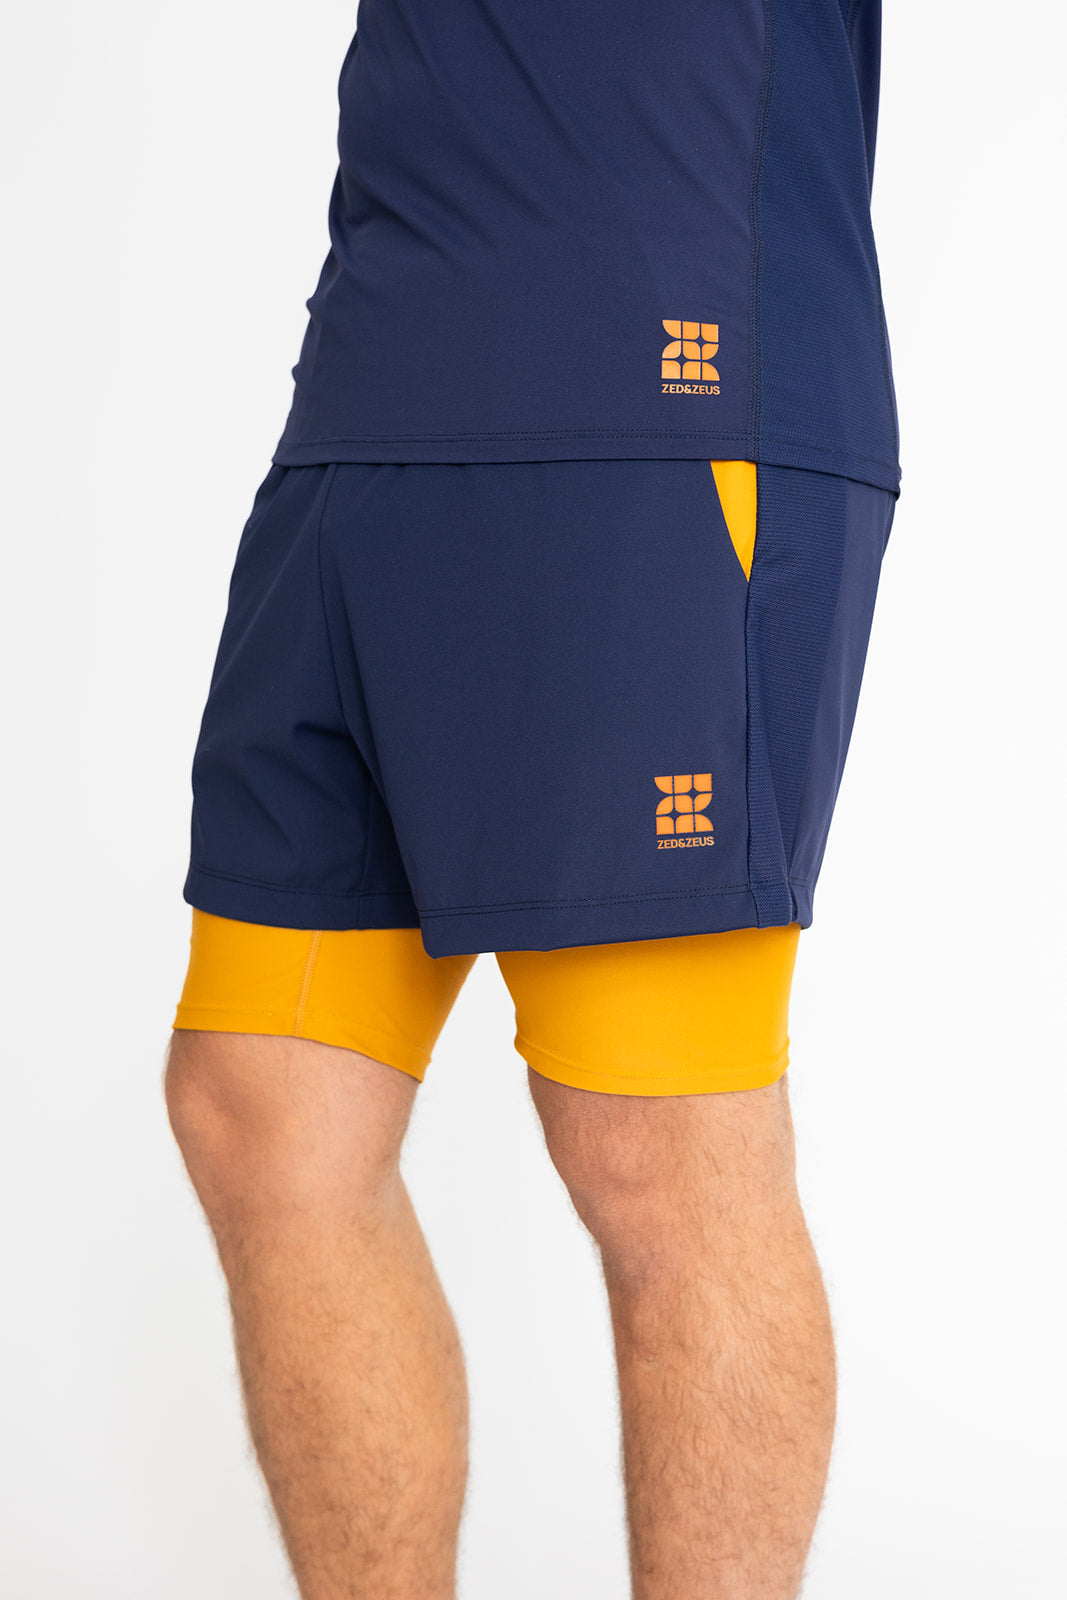 Conall 2-in-1 Shorts-Shorts-zed & zeus-Navy/Yellow-S-ZED & ZEUS